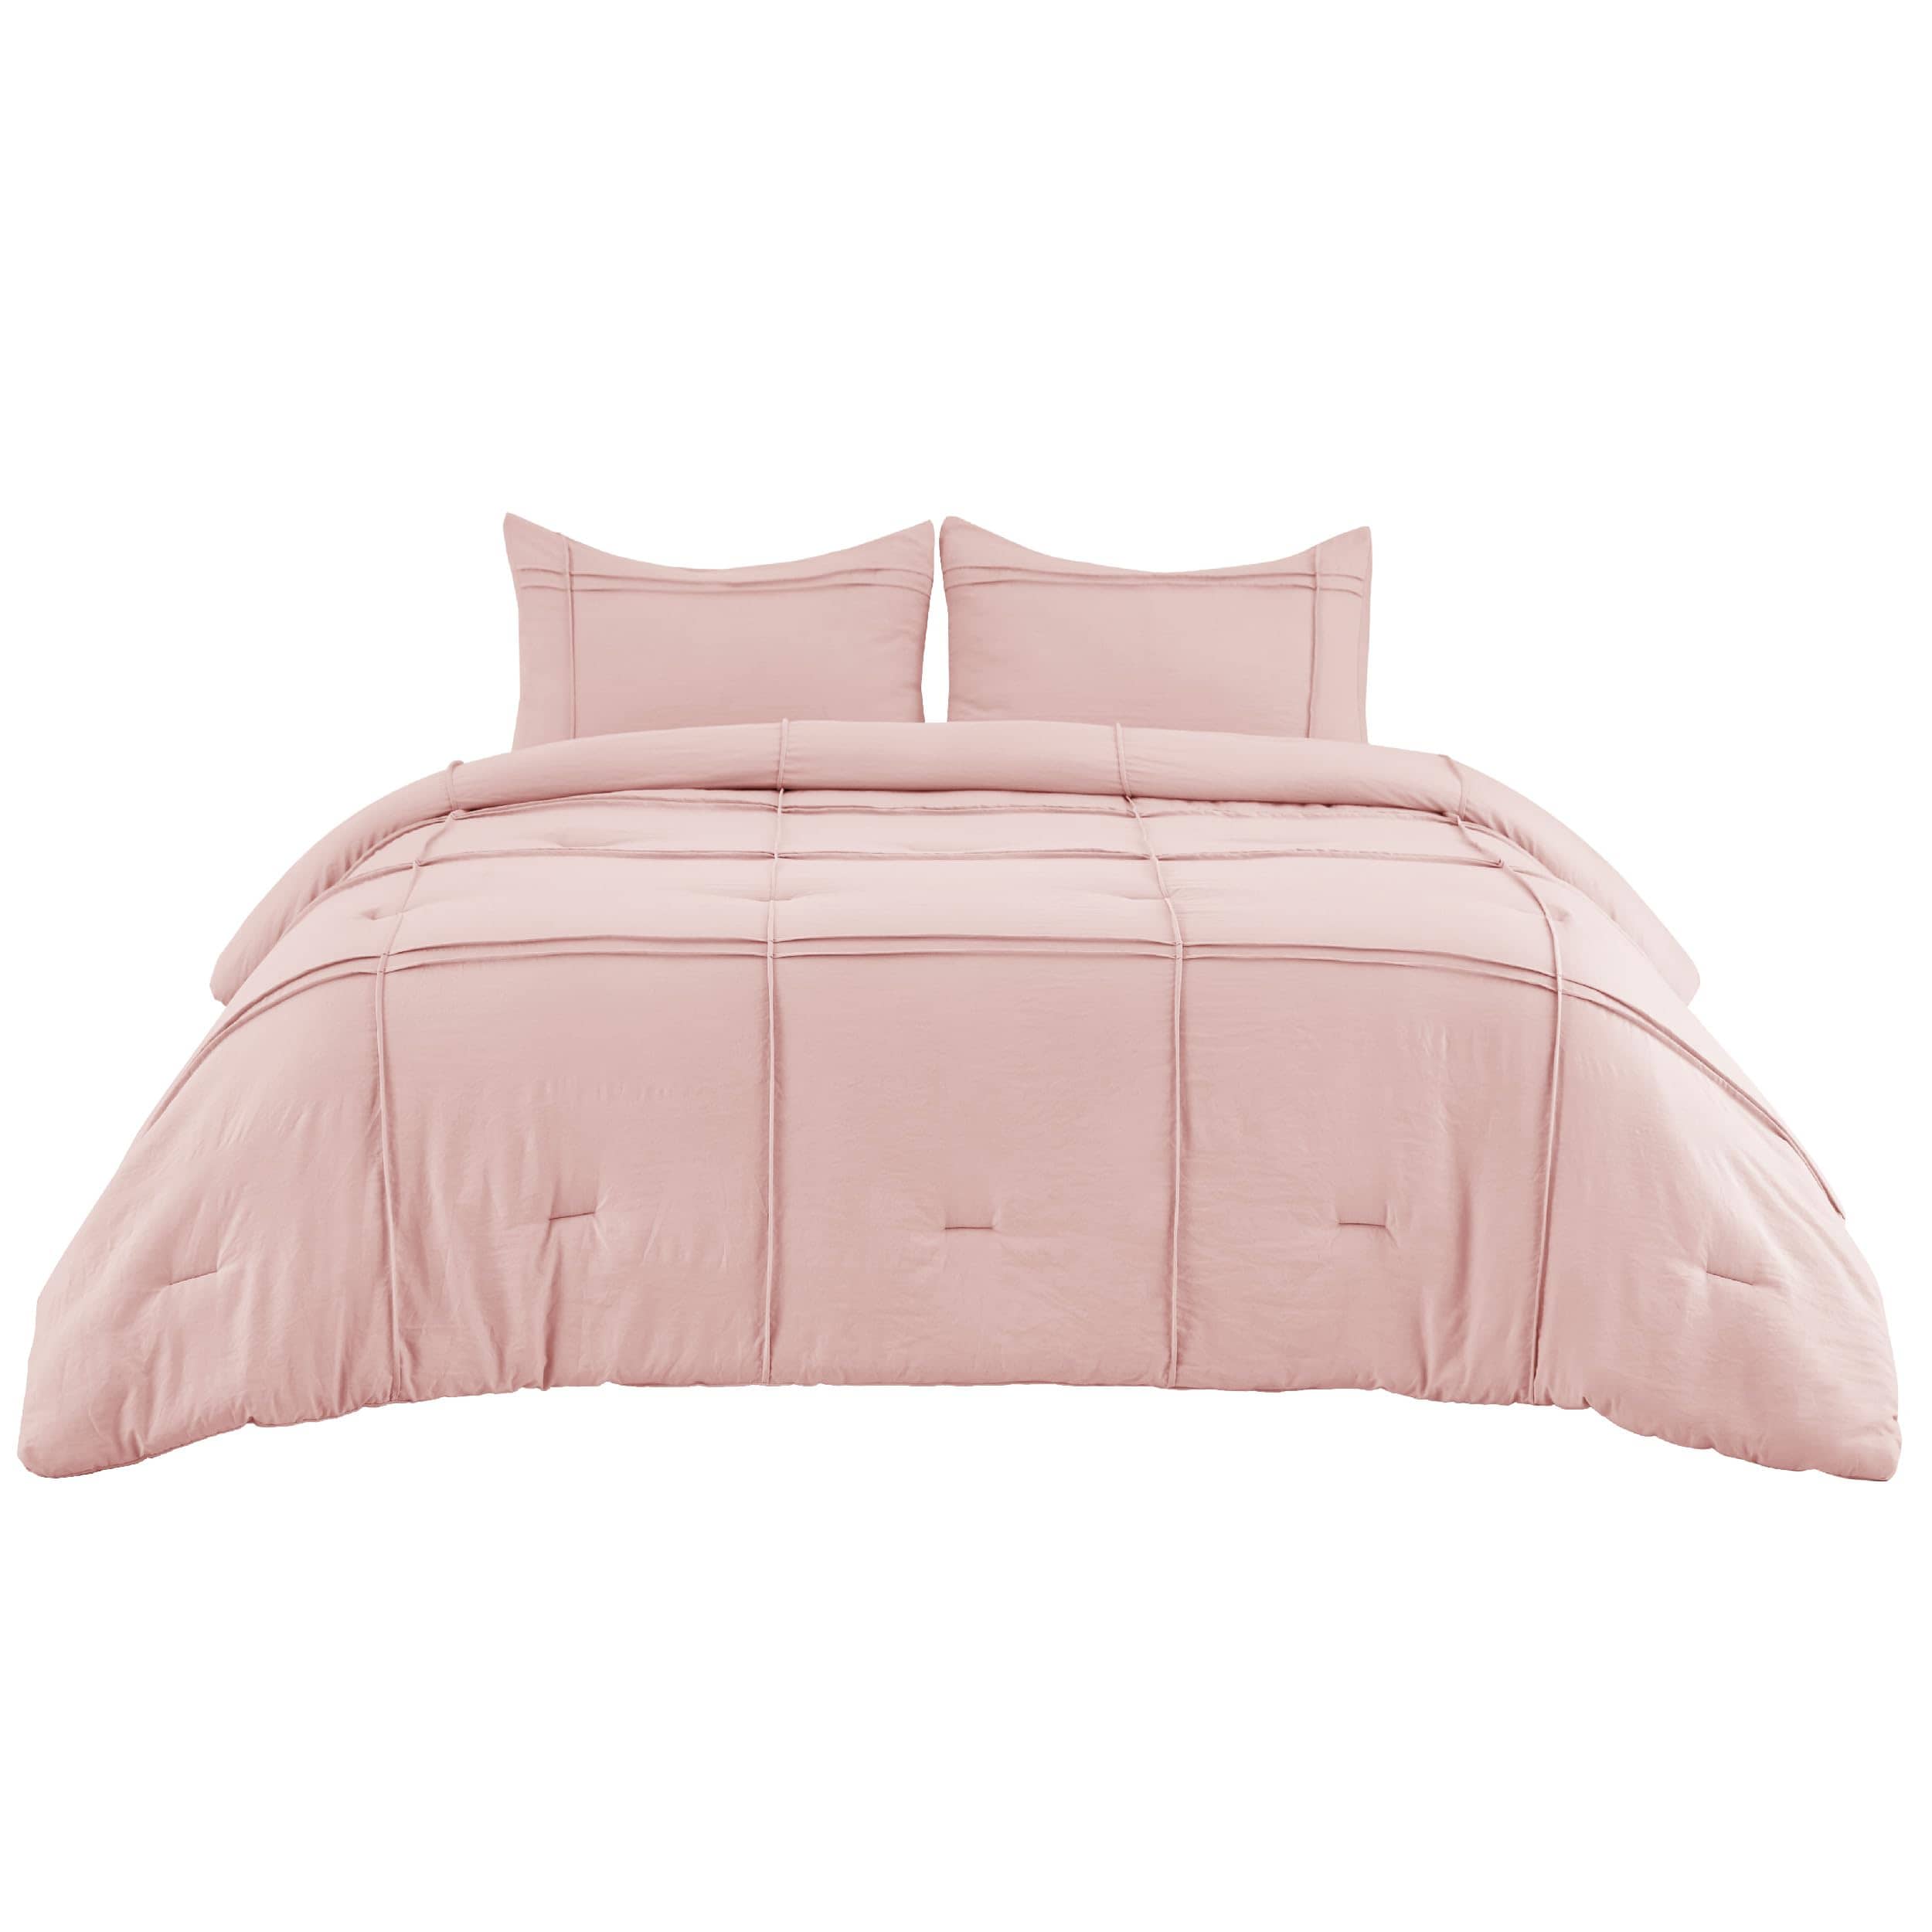 Bedsure Pinch Pleat Comforter set